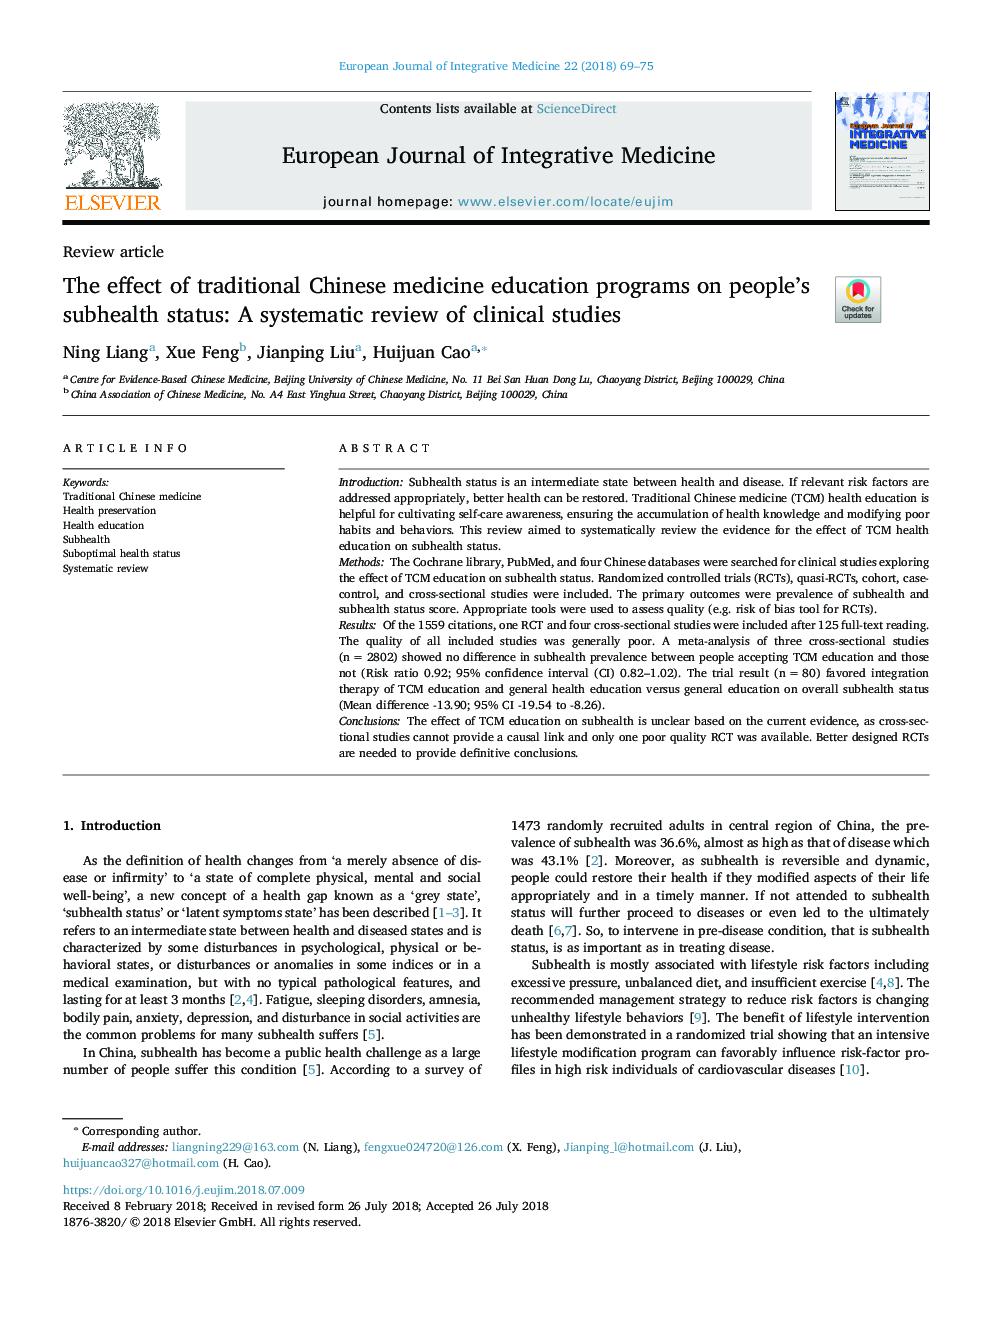 تأثیر برنامه های آموزش پزشکی طب سنتی چینی بر وضعیت سلامت افراد: بررسی سیستماتیک مطالعات بالینی 